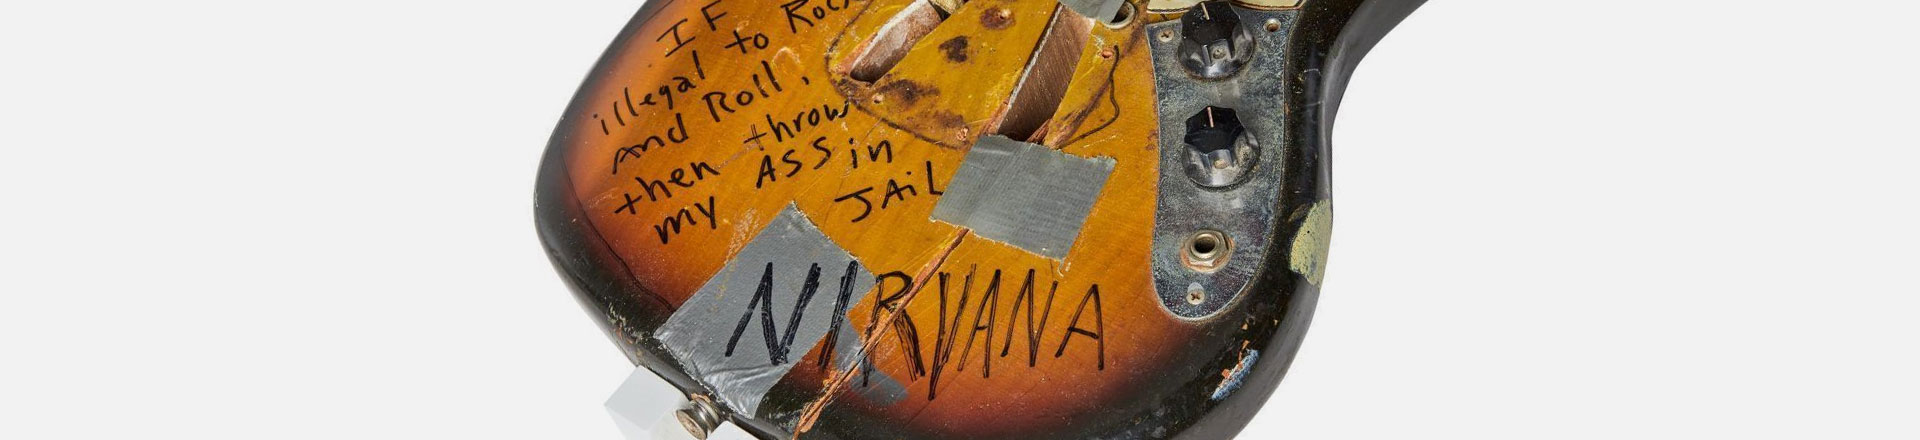 Sprzęt od K.Cobaina na aukcji - Kwoty szokują! 